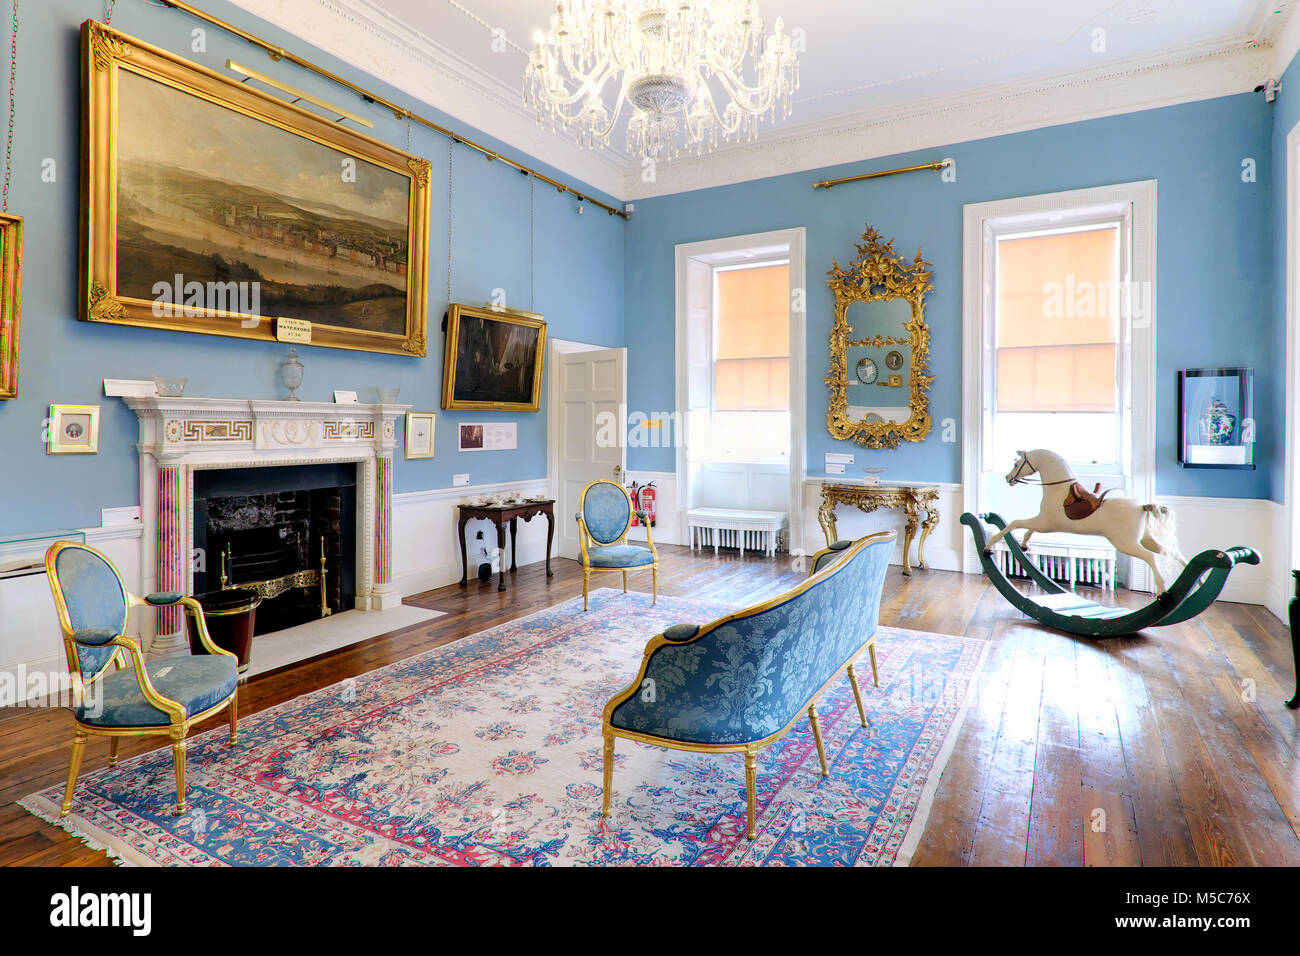 Der Salon mit der großen William Van der Hagen Malerei, Bishop's Palace - Schätze der Georgischen Waterford, Waterford, Irland Stockfoto